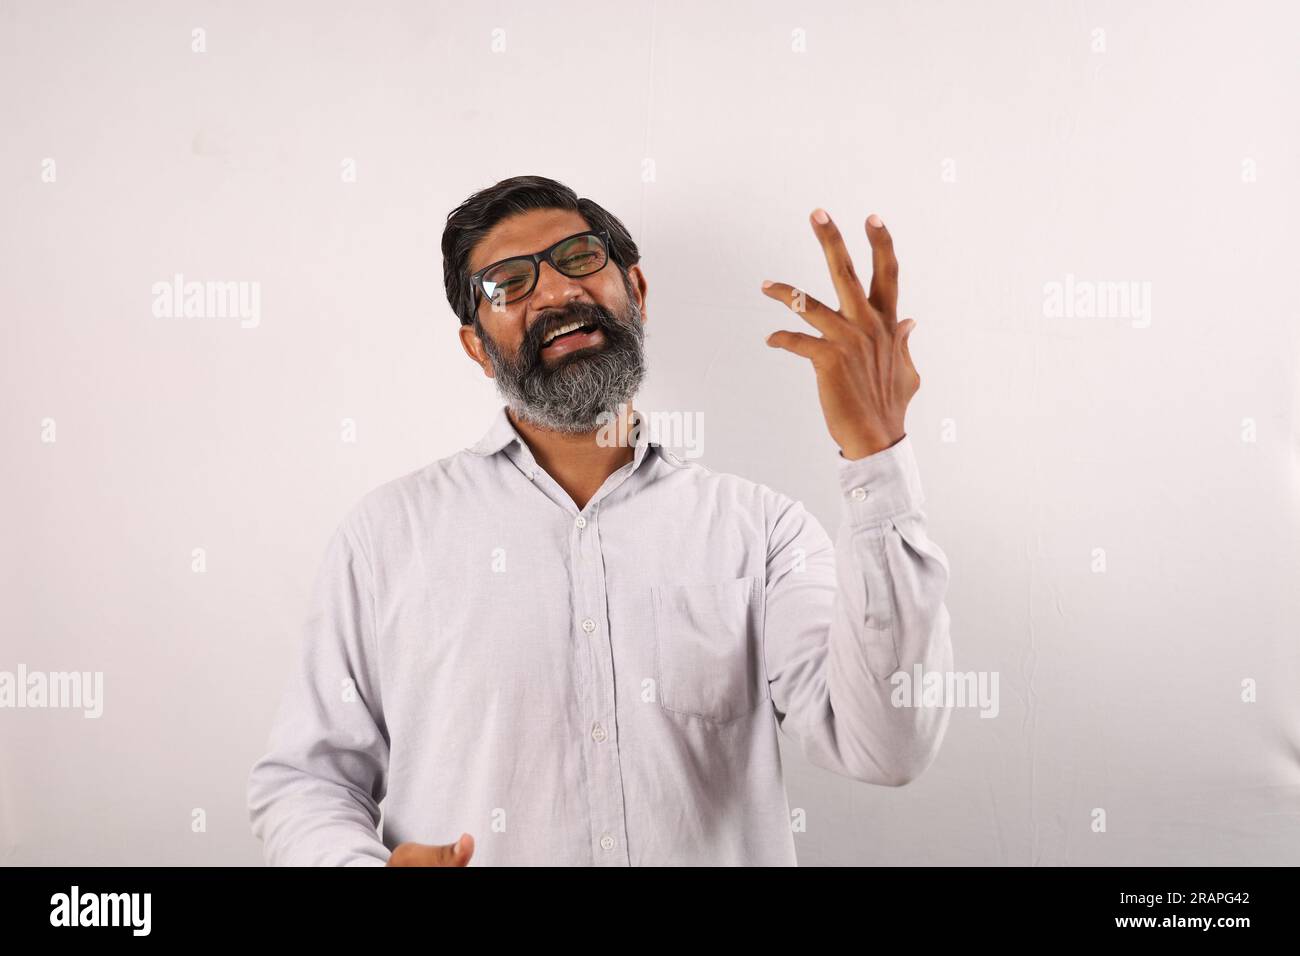 Portrait d'un homme barbu indien portant une chemise. Expressions funky illustrant le sens de l'accomplissement et de la réussite. Se sentir fier d'exécuter les choses. Banque D'Images